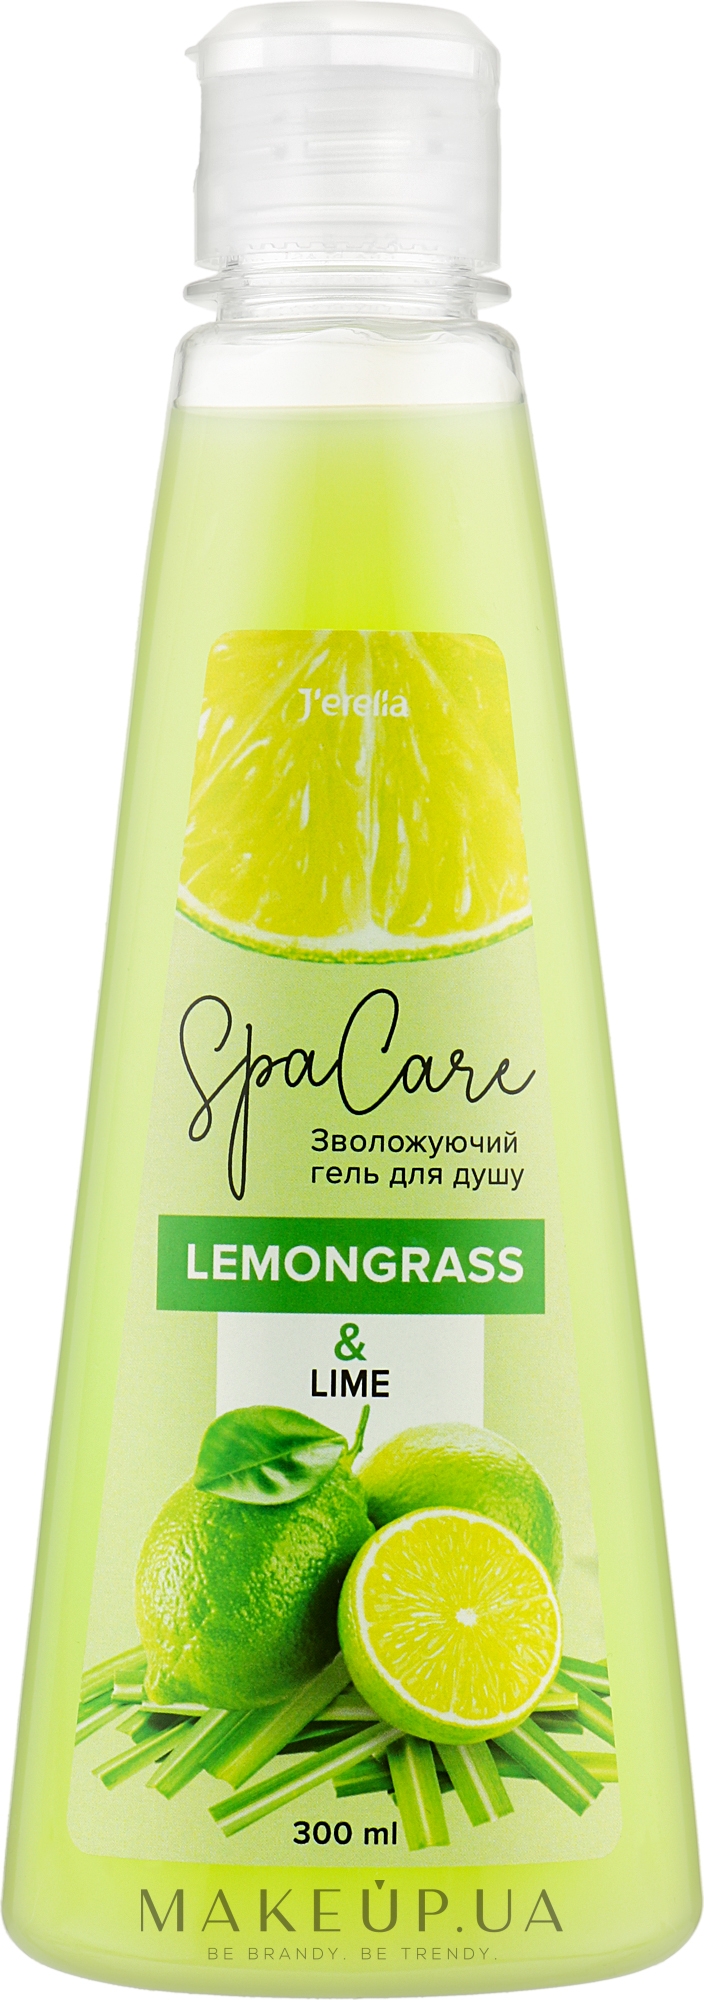 Тонізувальний гель для душу "Лемонграс і лайм" - J'erelia Spa Care Lemongrass & Lime — фото 300ml